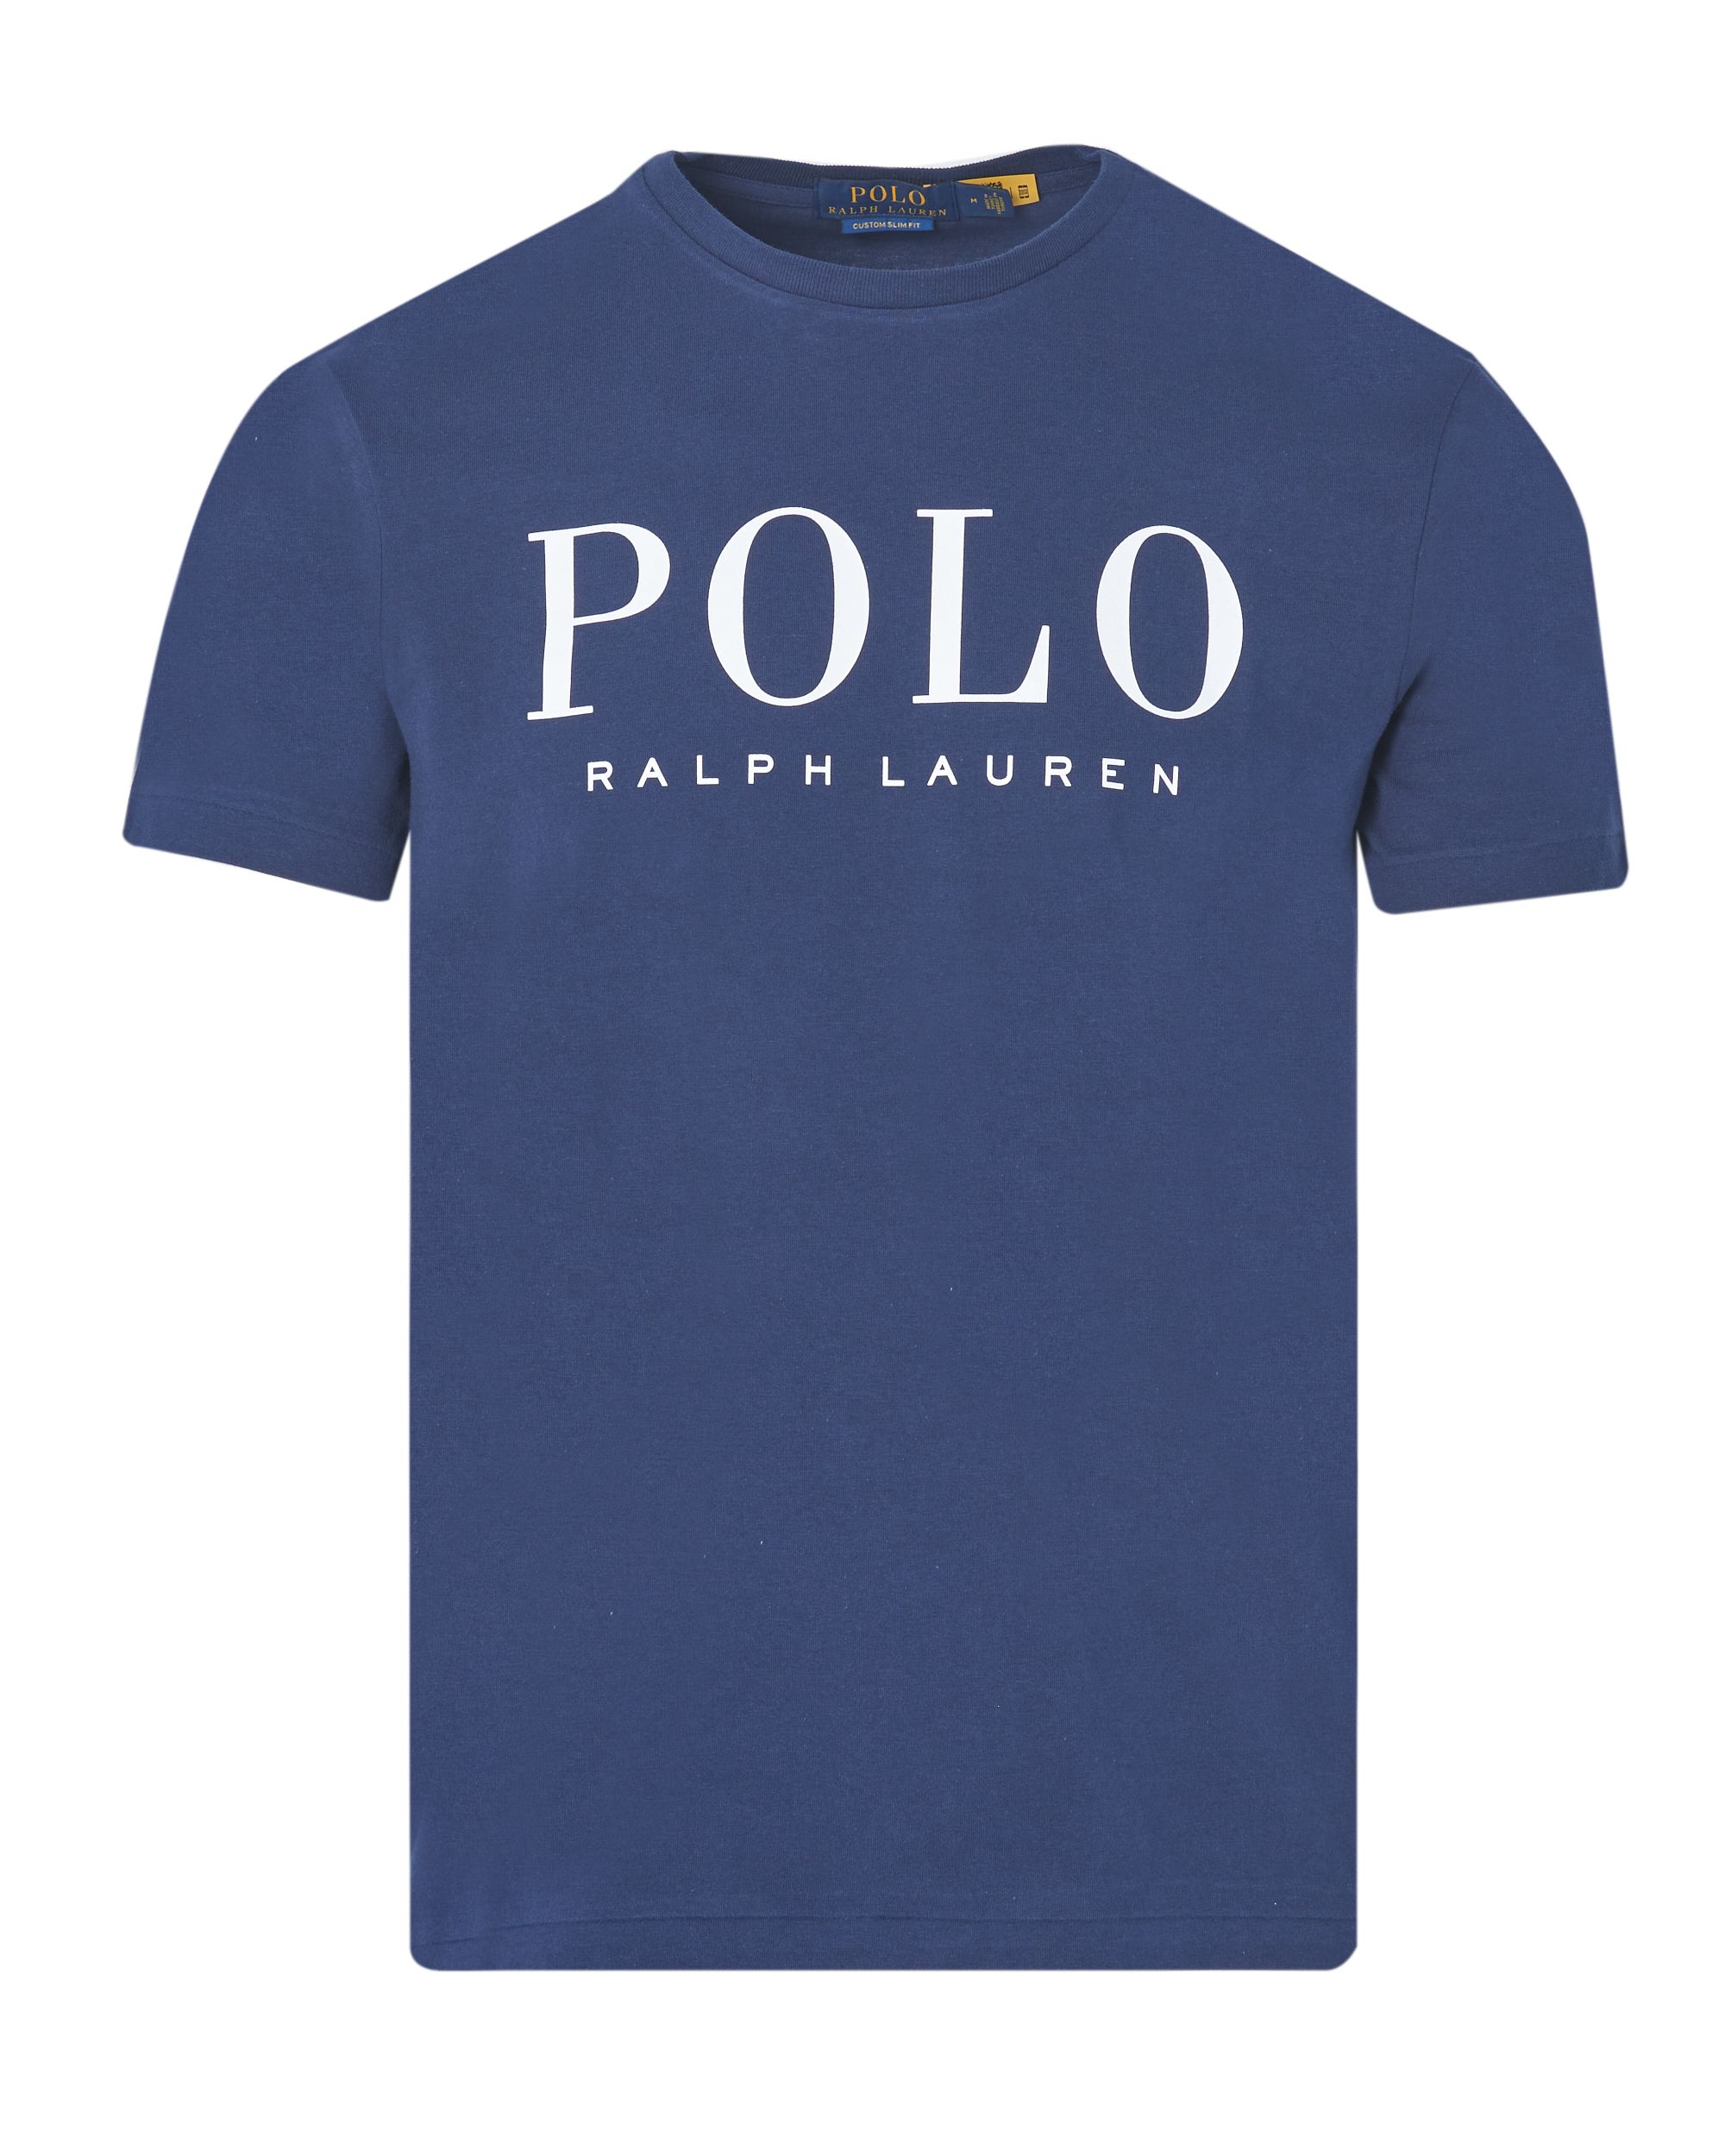 Polo Ralph Lauren T-shirt KM Donker blauw 083481-001-L